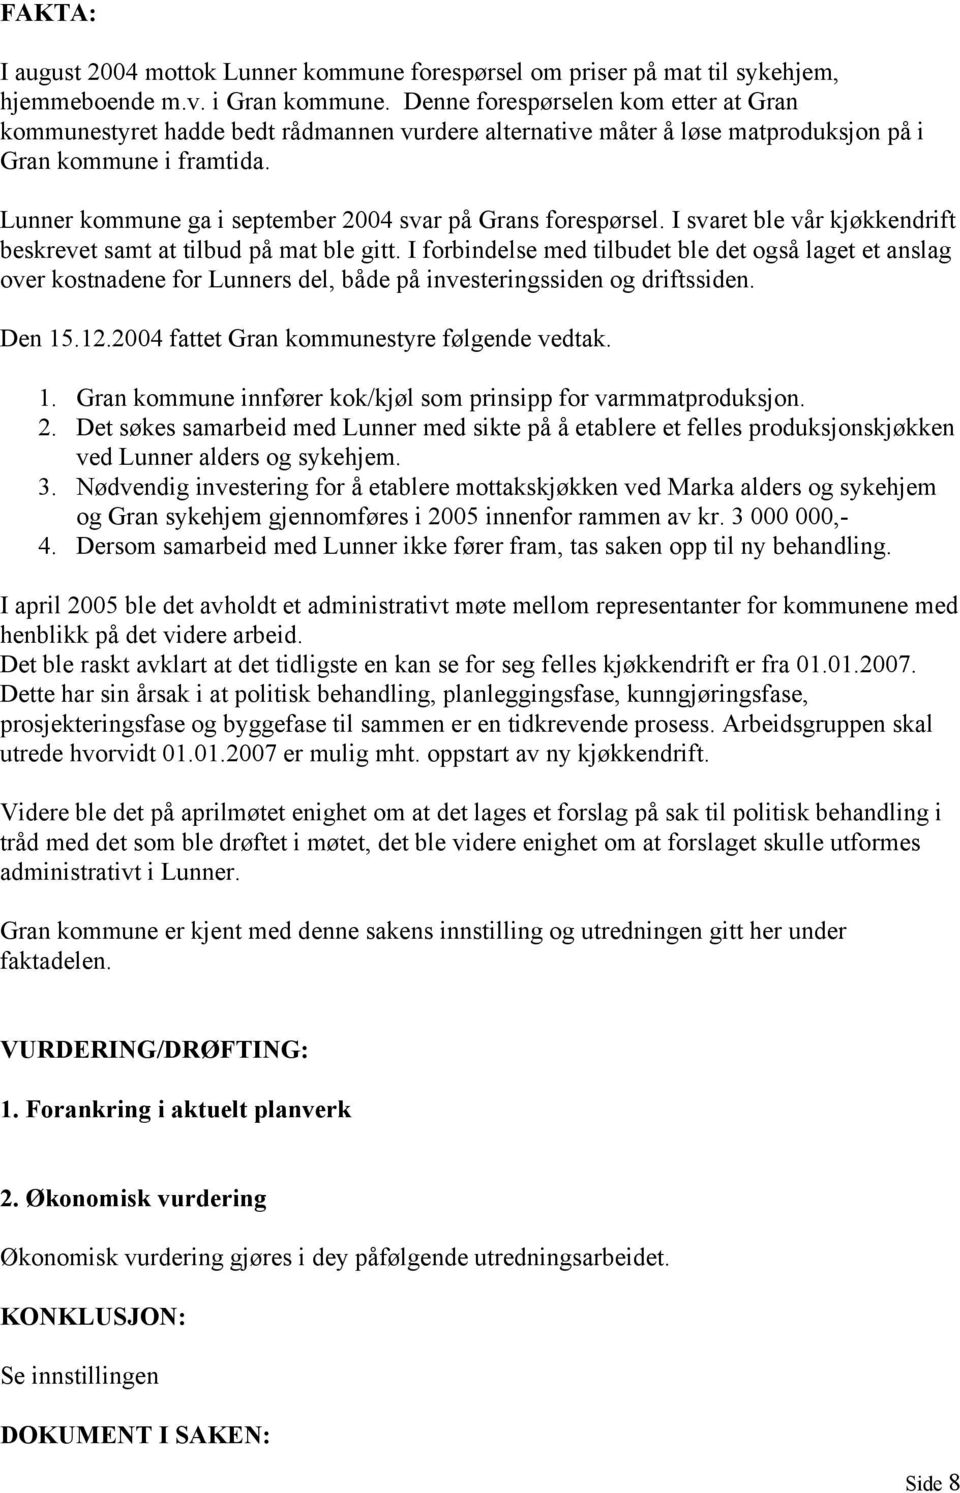 Lunner kommune ga i september 2004 svar på Grans forespørsel. I svaret ble vår kjøkkendrift beskrevet samt at tilbud på mat ble gitt.